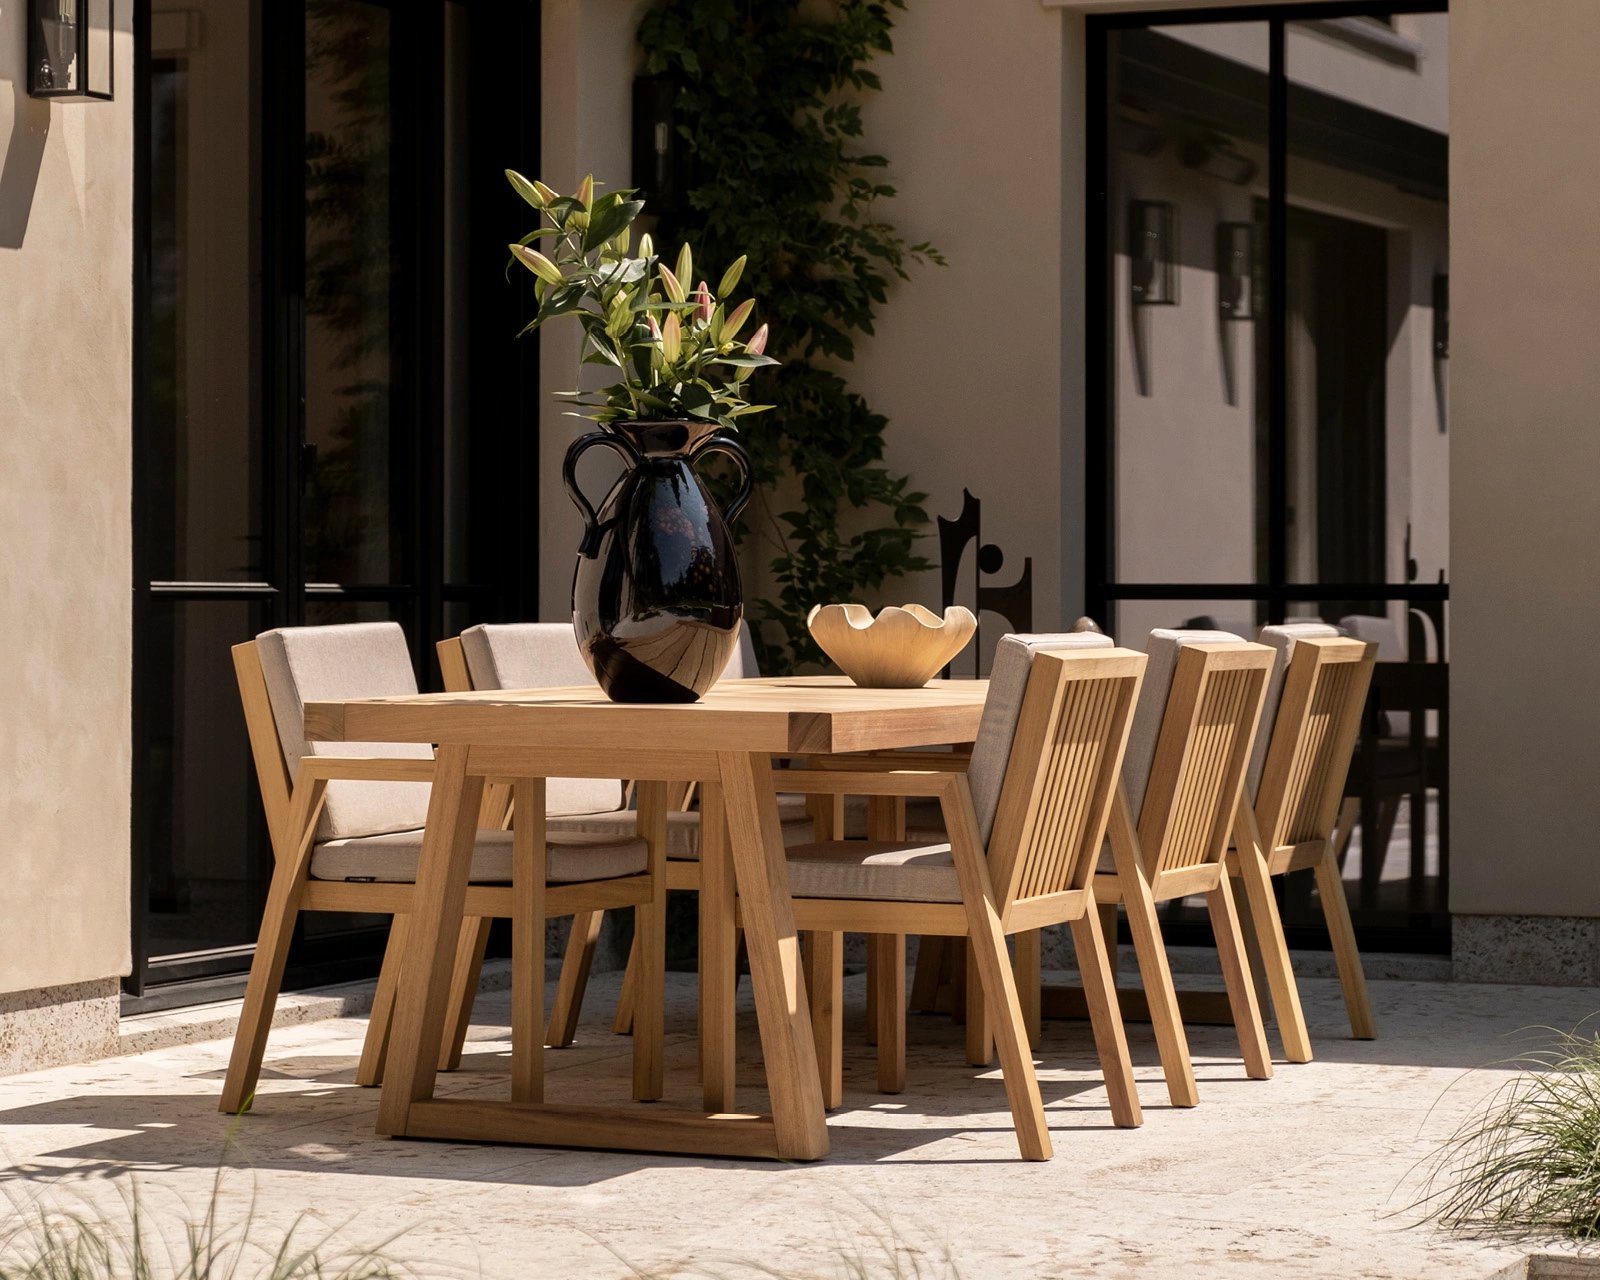 De iroko buitenmeubel collectie van Table du Sud bestaat uit een serie tuintafels en tuinstoelen die gemaakt zijn van iroko hout en op maat worden gemaakt in eigen werkplaats in Nederland.